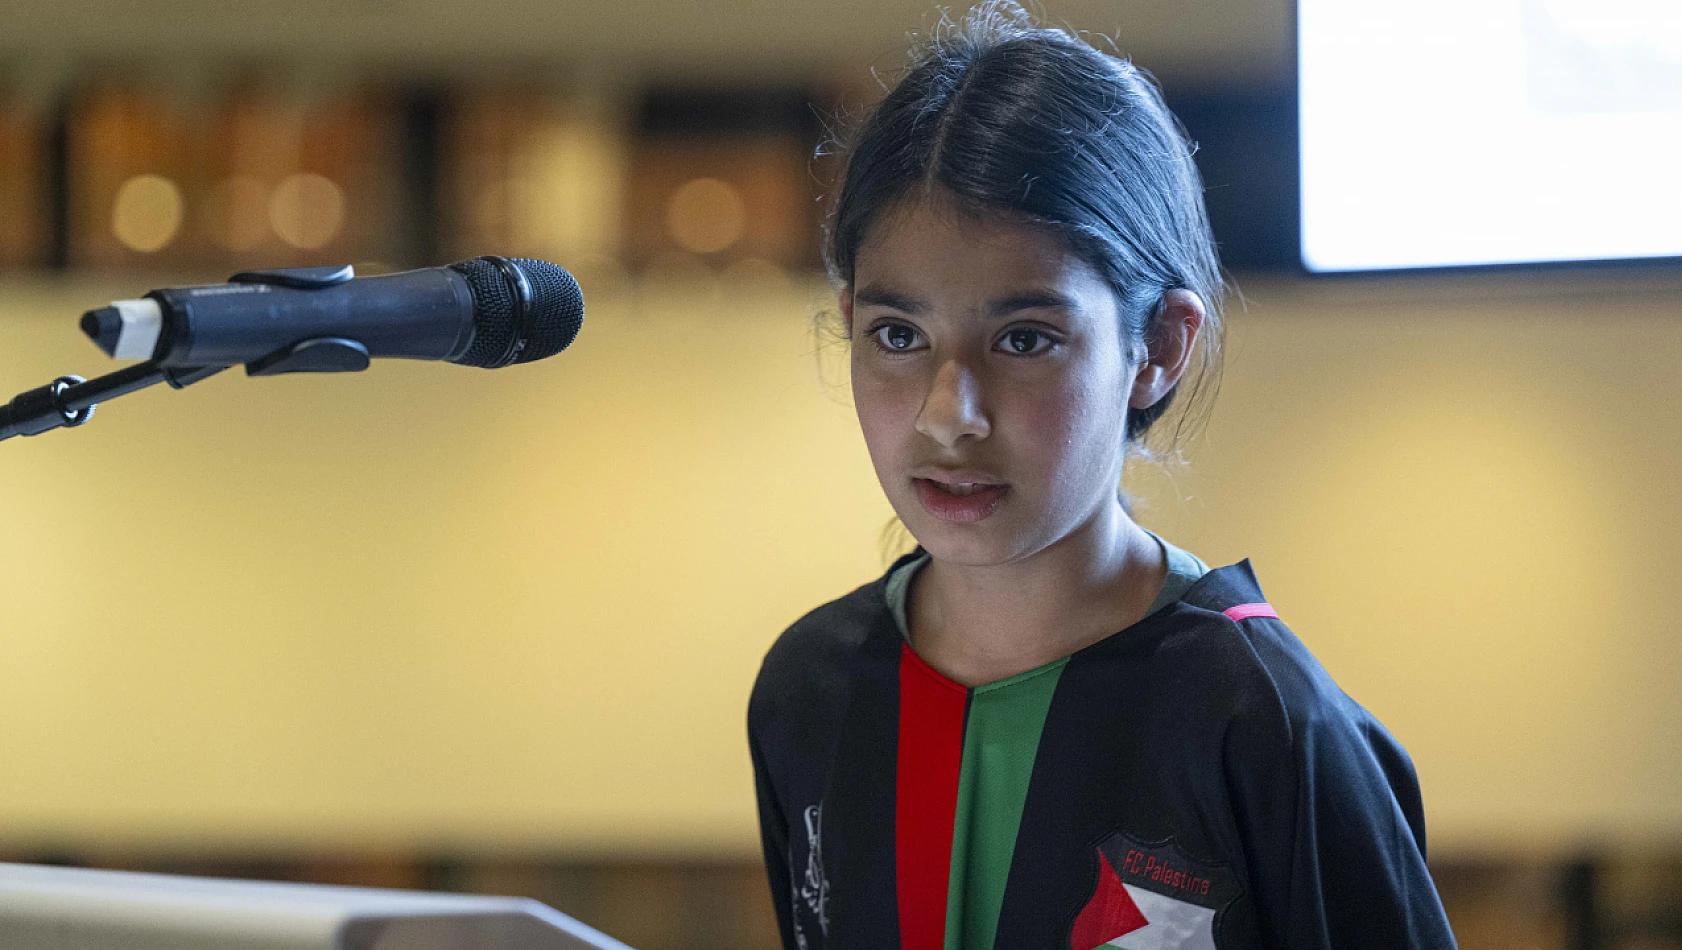 İngiltere'deki 10 yaşındaki kız öğrenci, Gazzeli çocuklar için 8 bin sterlin bağış topladı